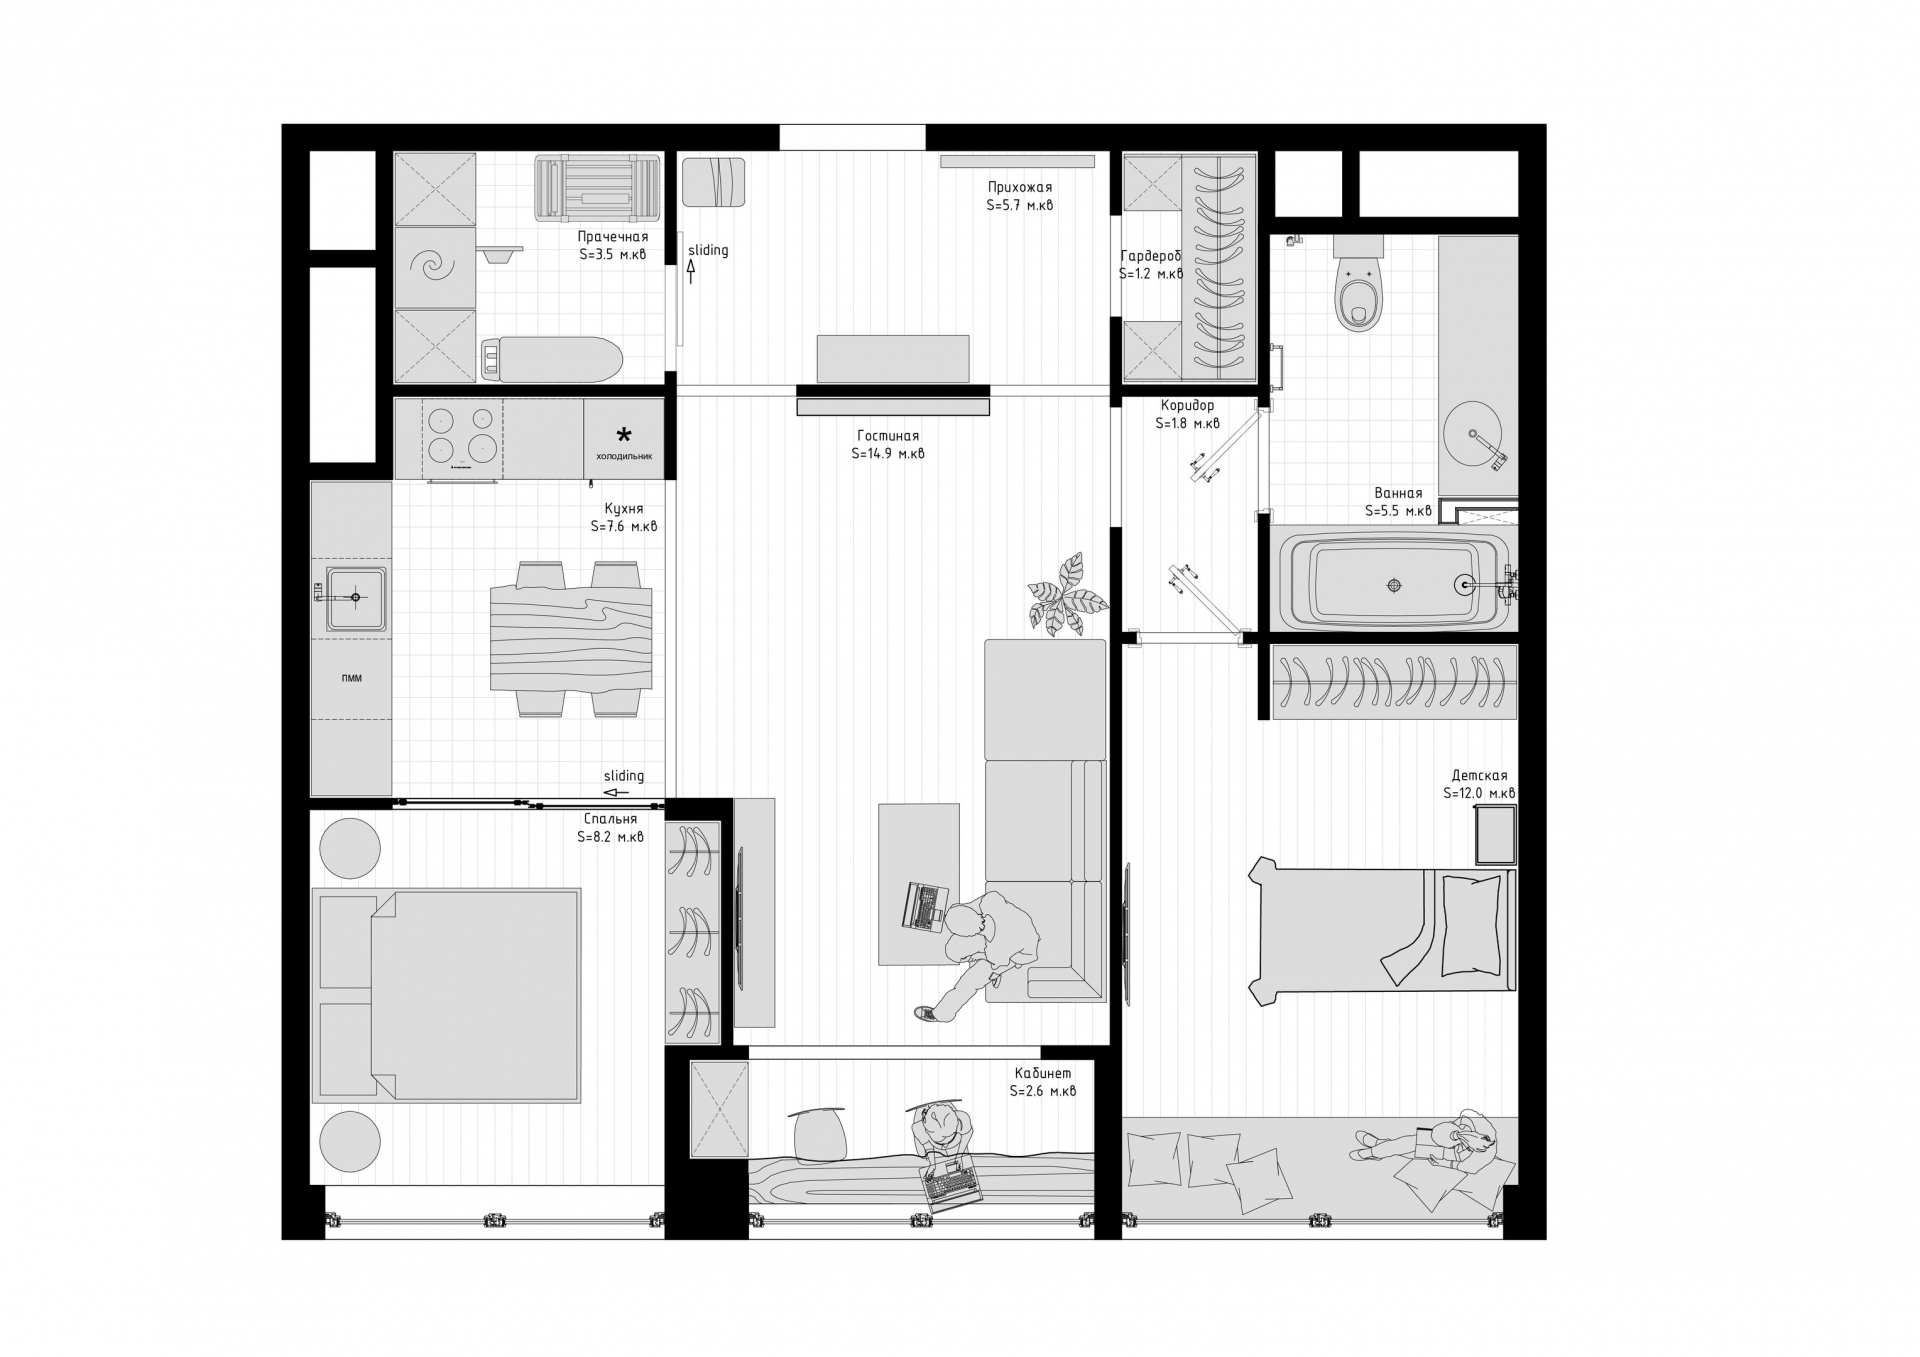 Sơ đồ thiết kế căn hộ diện tích 63m² của gia đình nhỏ gồm 3 thành viên do Anna và Yana cung cấp.